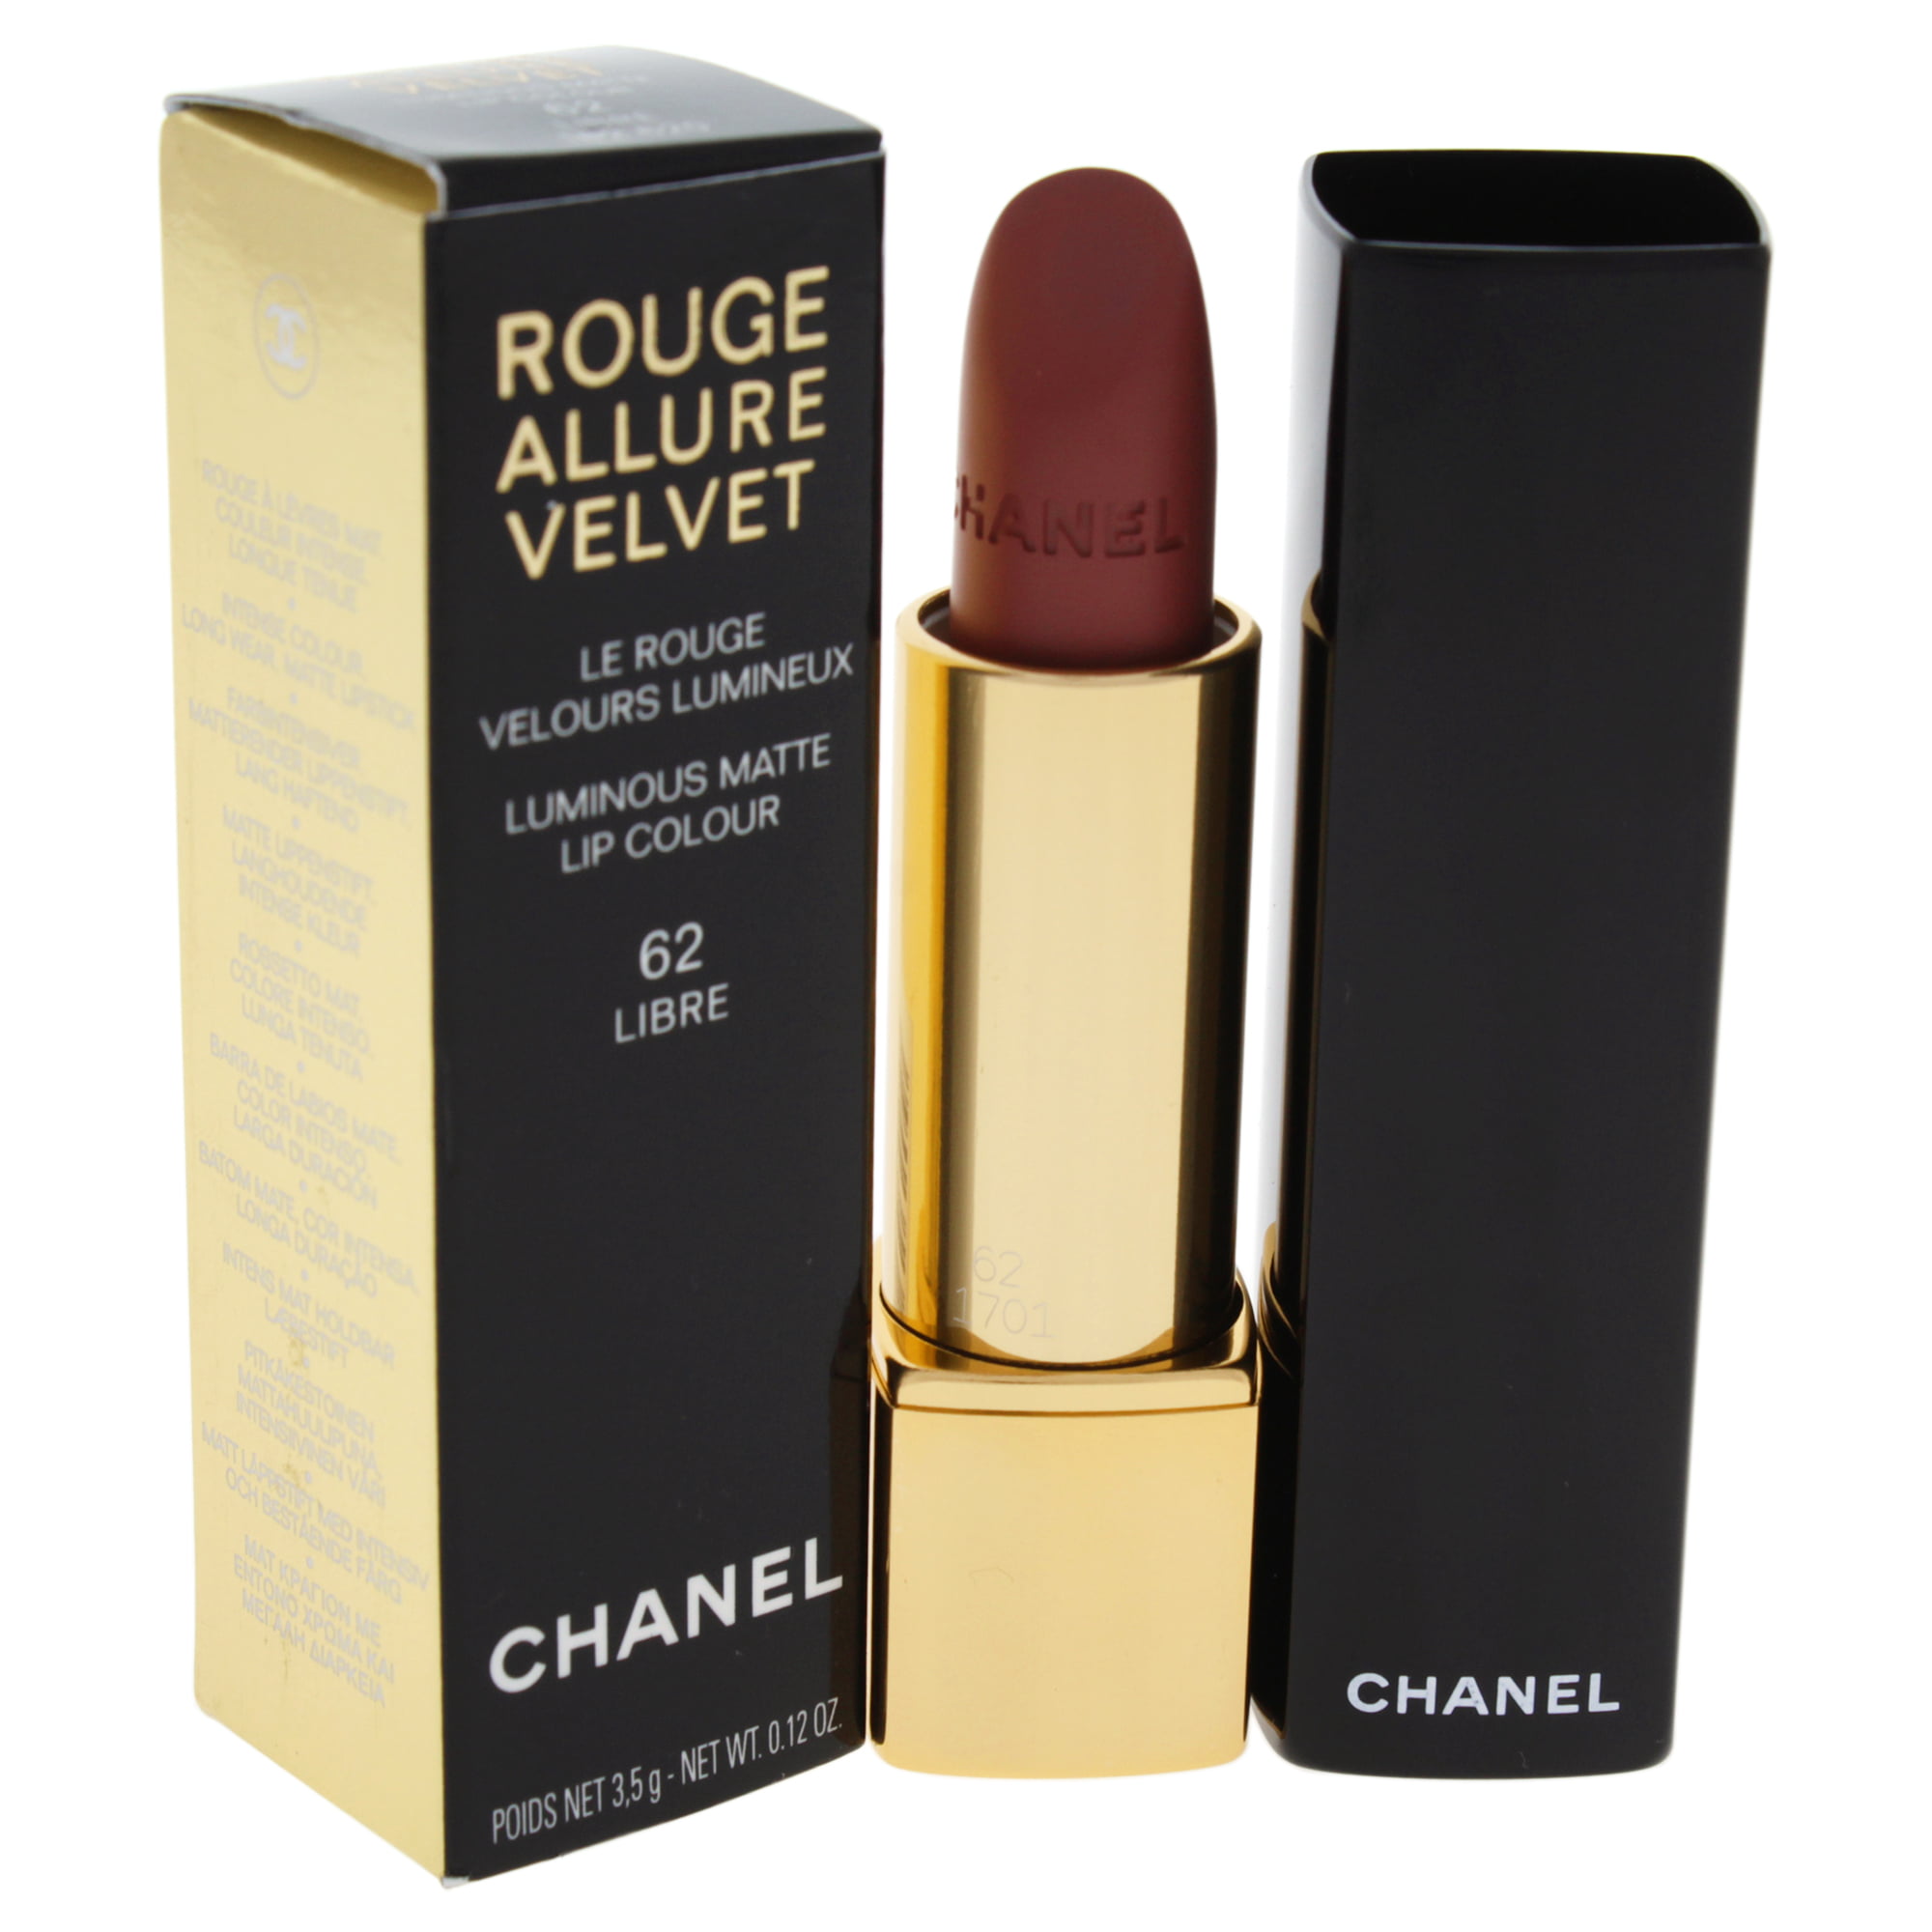 Chanel Rouge Allure Velvet Luminous Matte Lip Colour - # 62 Libre 0.12 oz  Lipstick